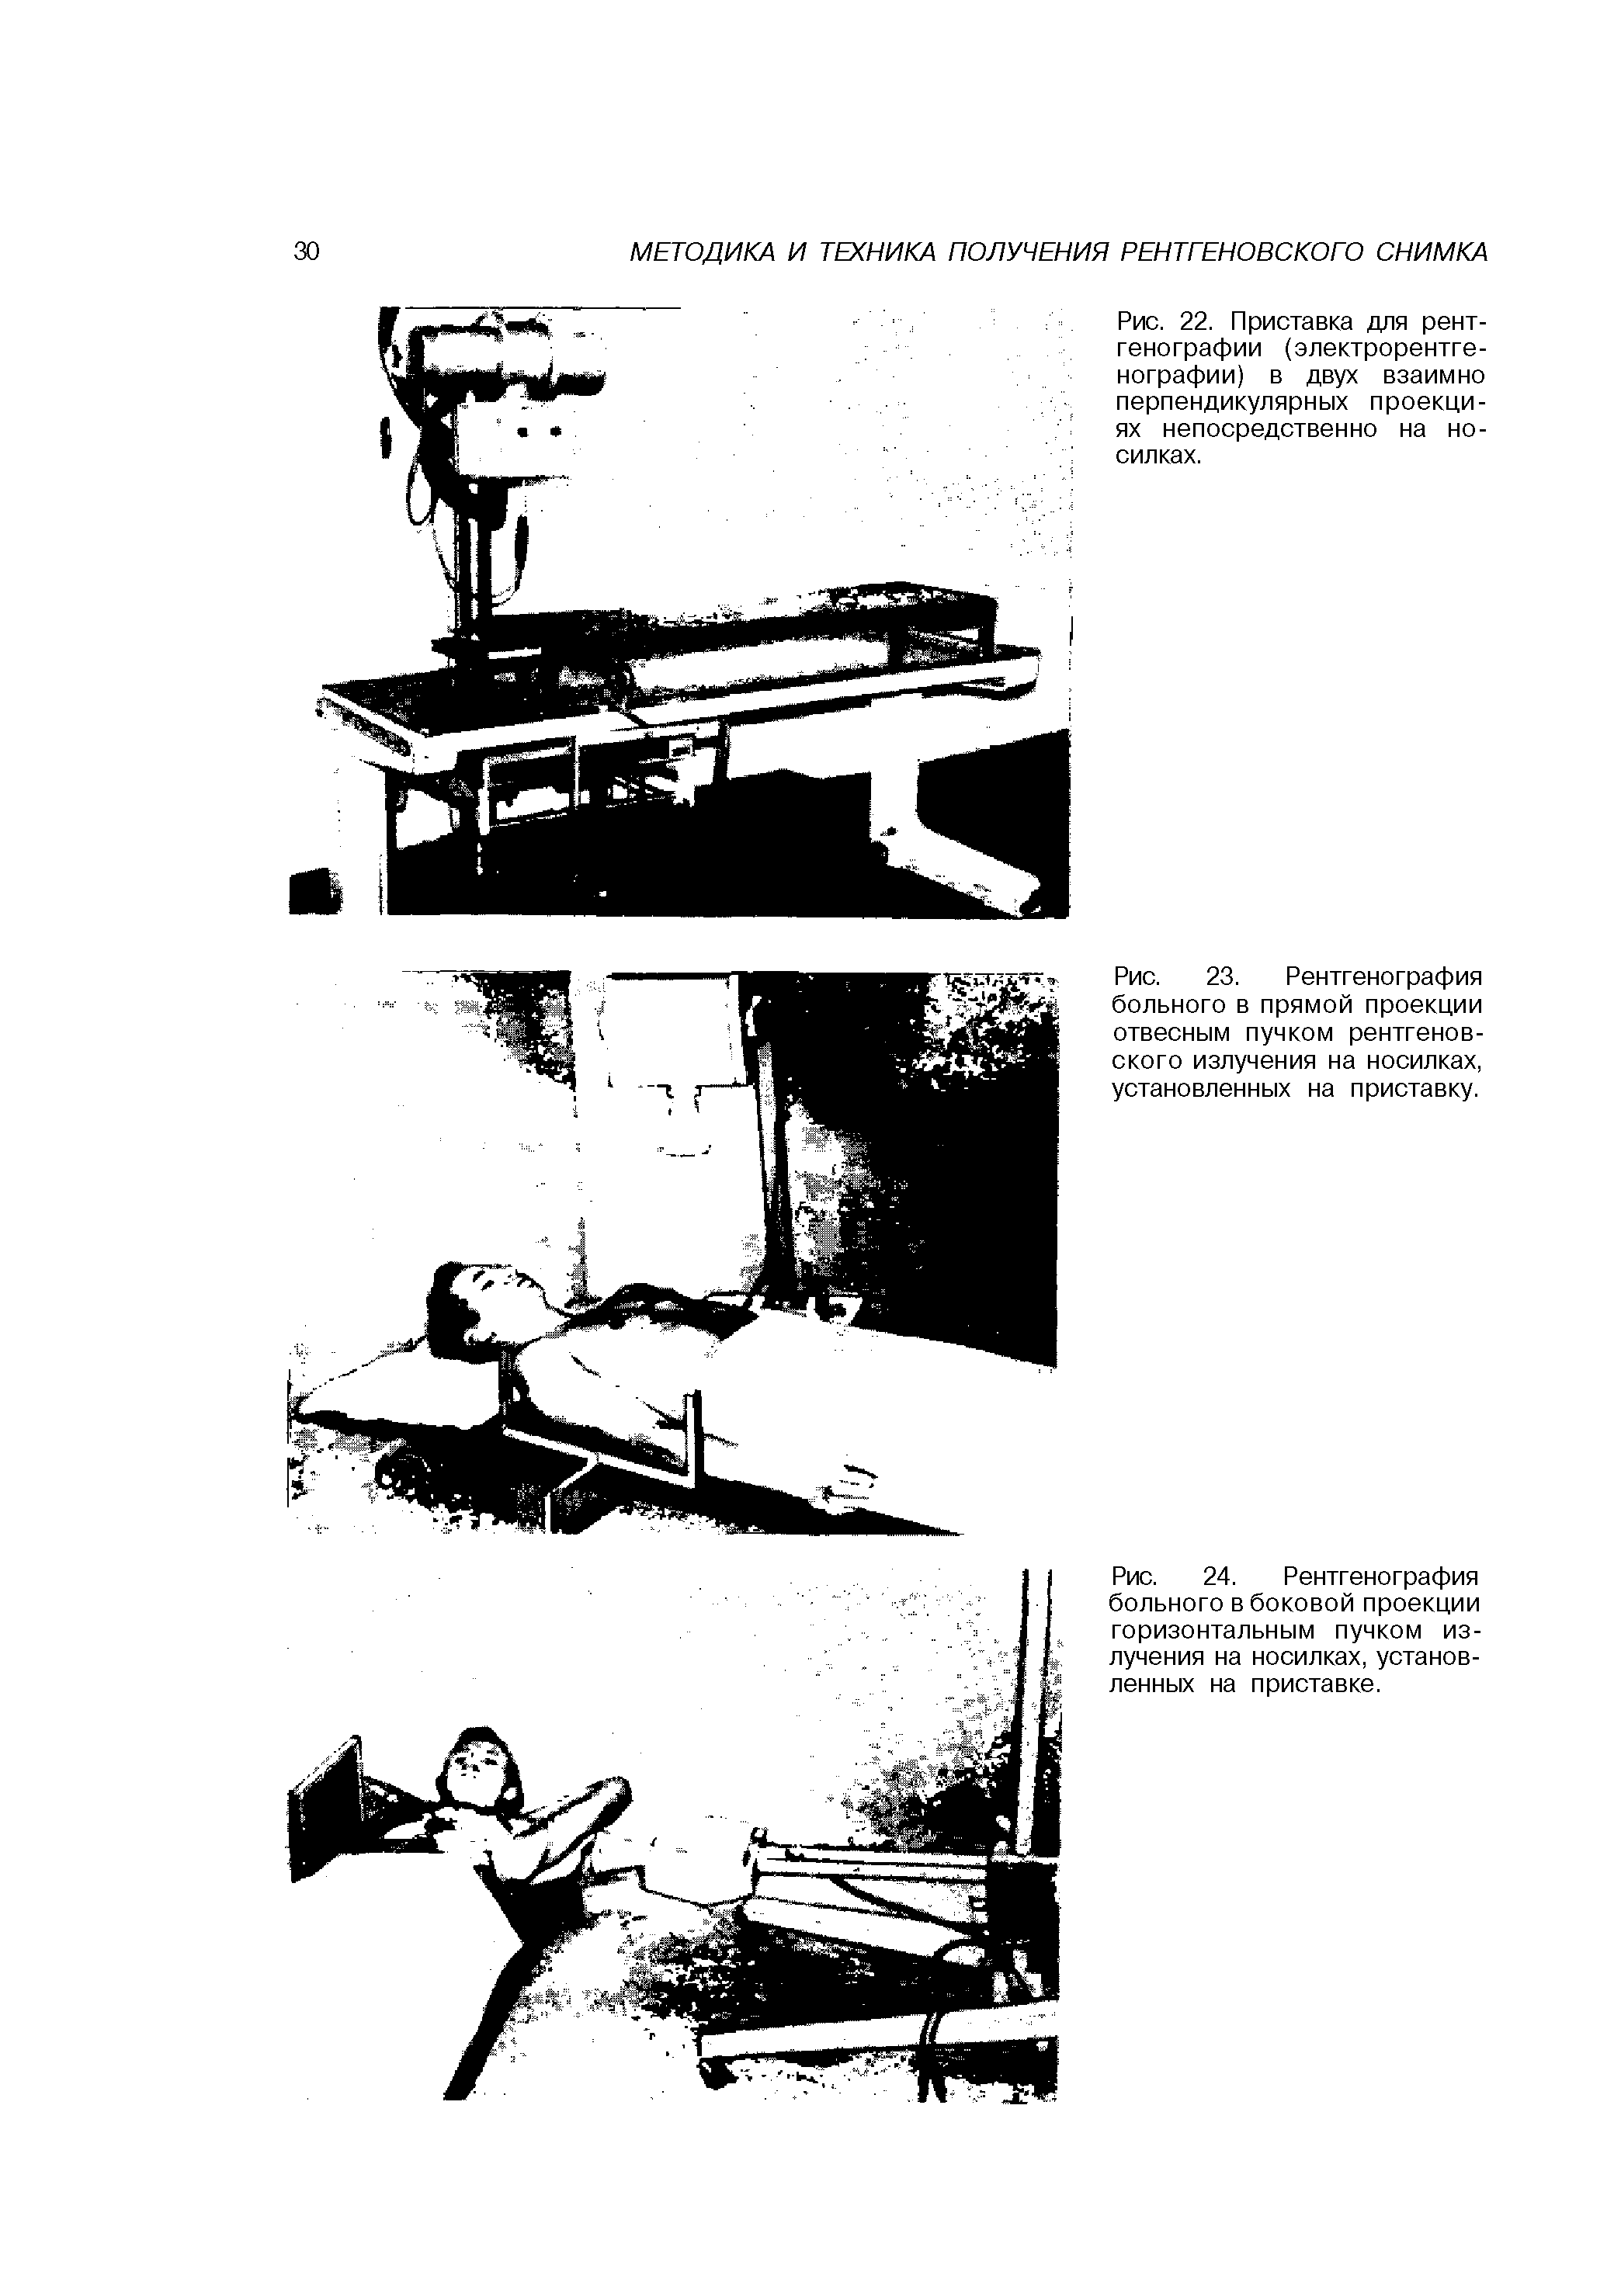 Рис. 24. Рентгенография больного в боковой проекции горизонтальным пучком излучения на носилках, установленных на приставке.